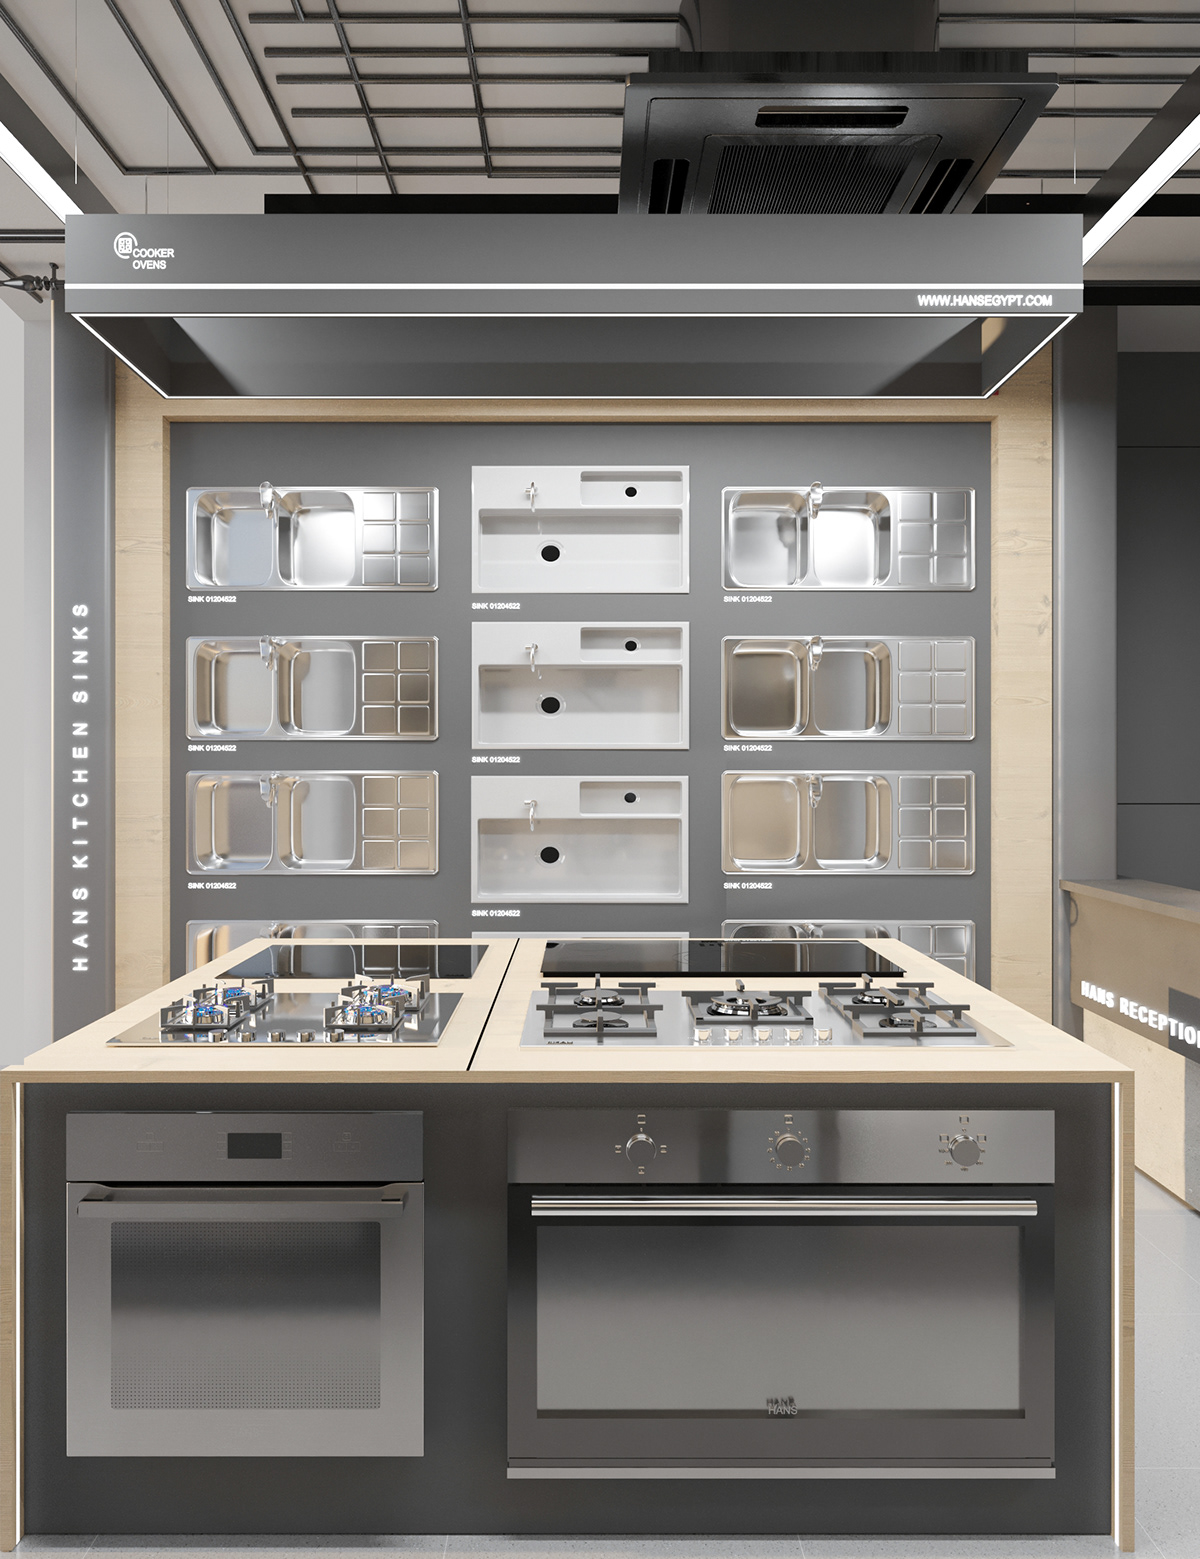 commercial design Retail store shop interior design  hans kitchen design 3ds max modern kitchenappliancesdesign